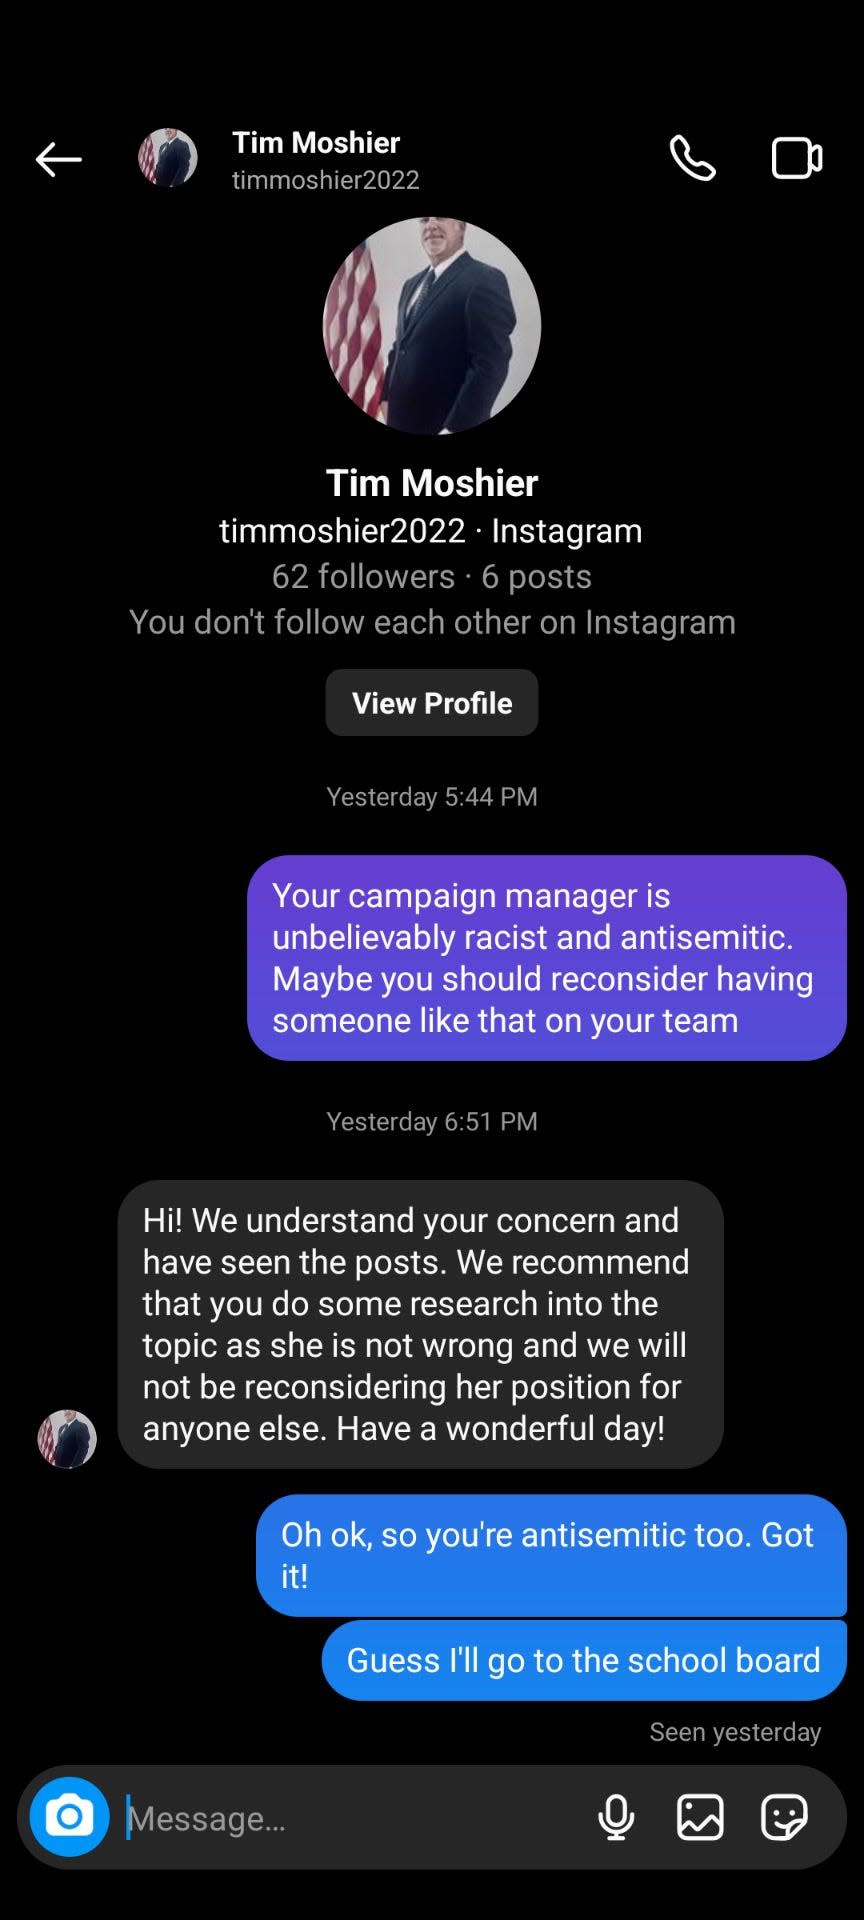 Tim Moshier's Instagram account responds to criticism via Instagram messenger.